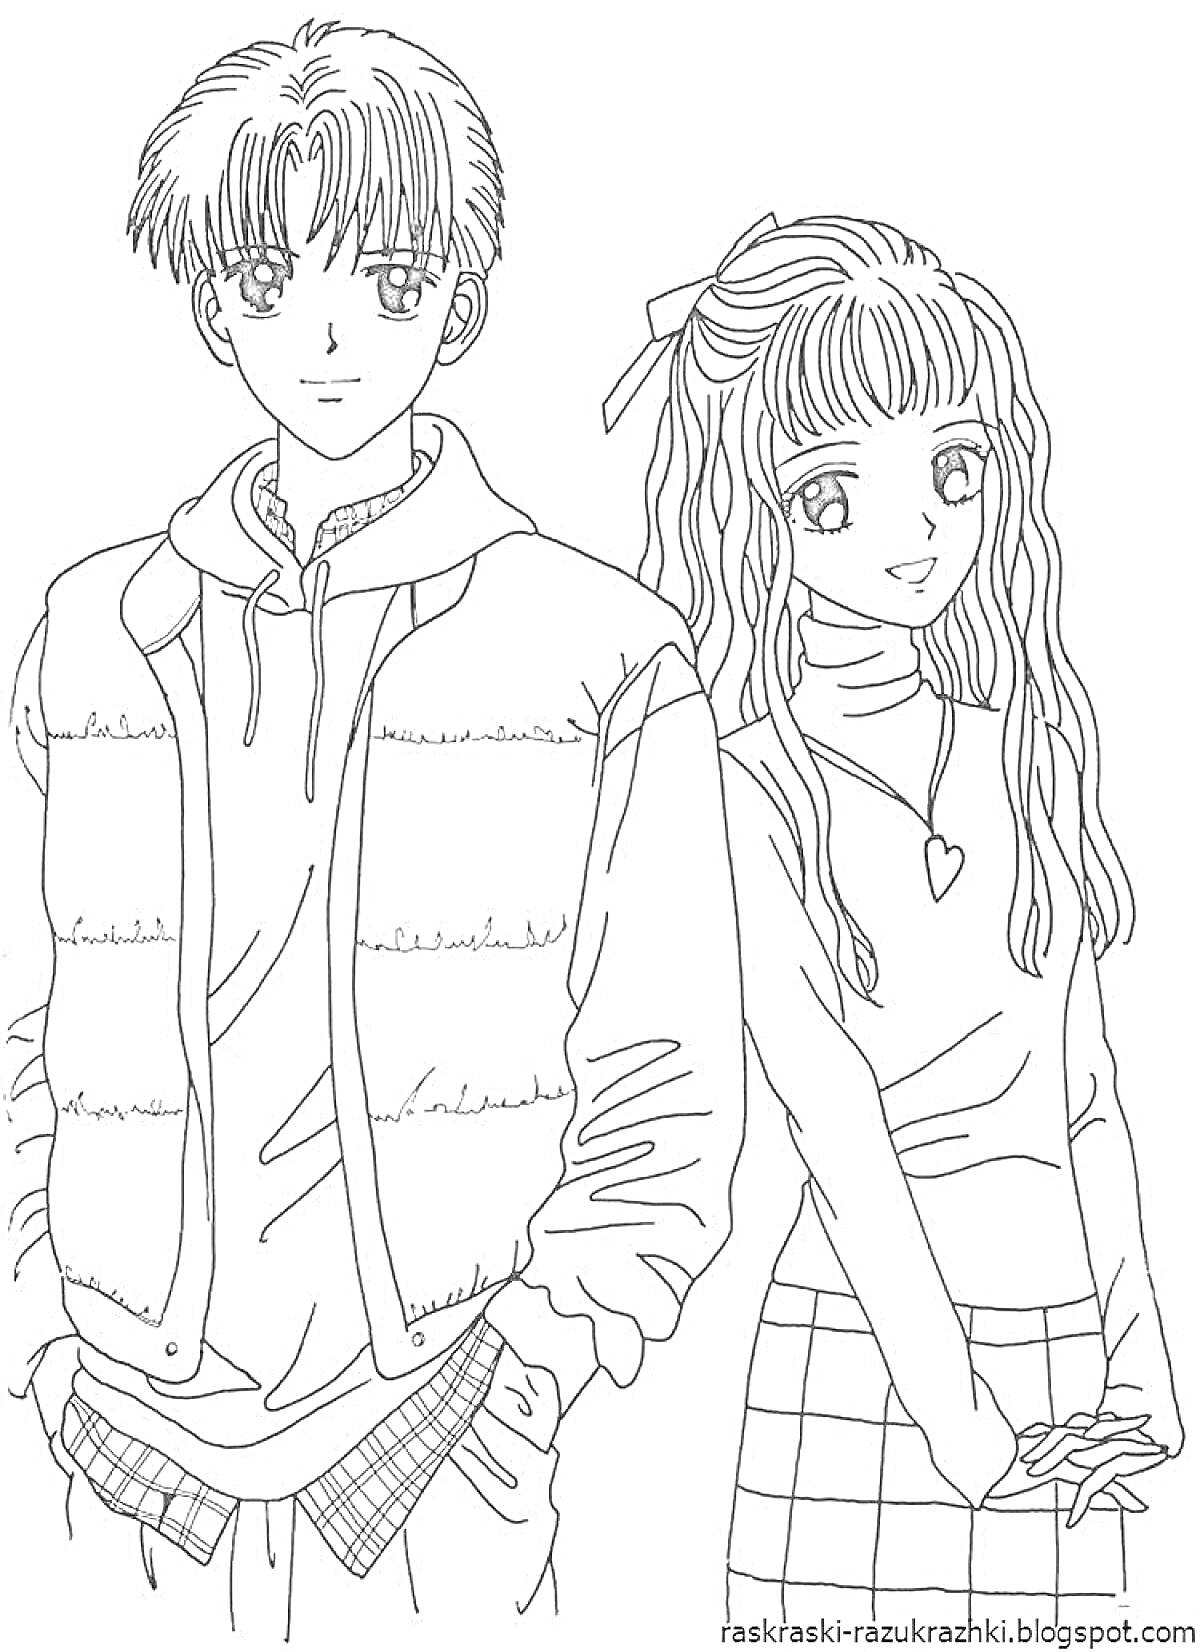 Раскраска Подростки в школьной форме – мальчик в двухслойной одежде с жилетом и девочка с длинными волосами в юбке и топе с длинными рукавами